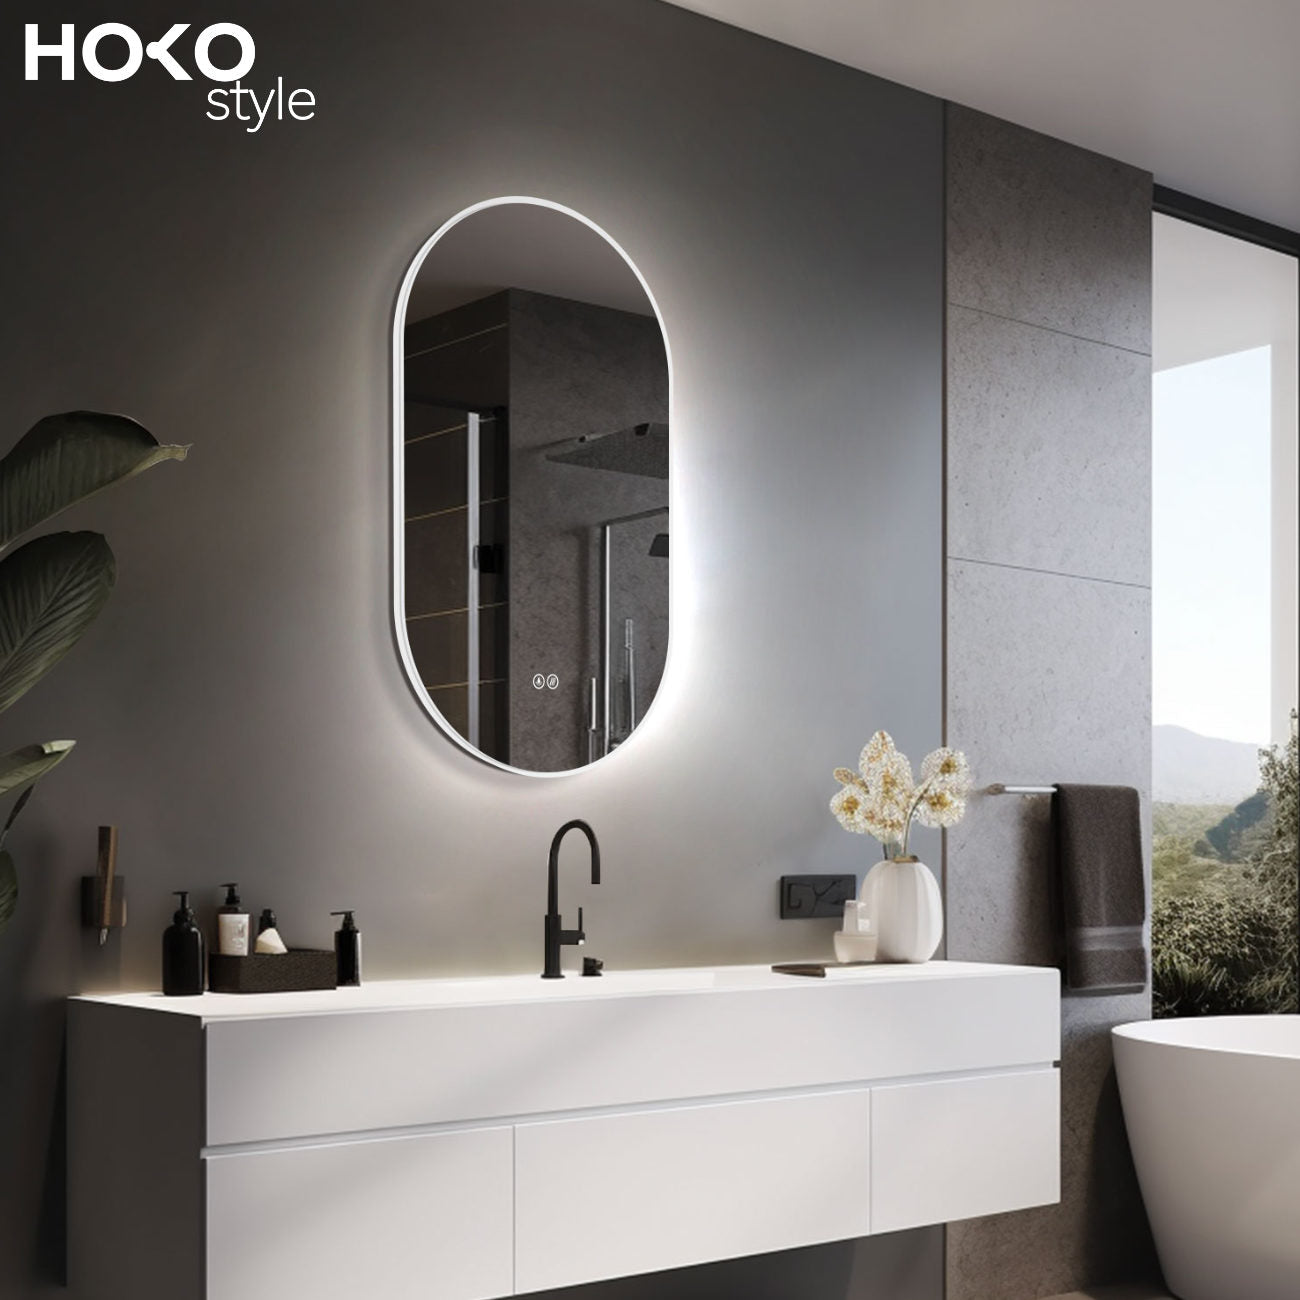 Badspiegel mit Beleuchtung,  Lichtwechsel, oval Design Badspiegel, Antibeschlag-Funktion, Weiß Metall Rahmen